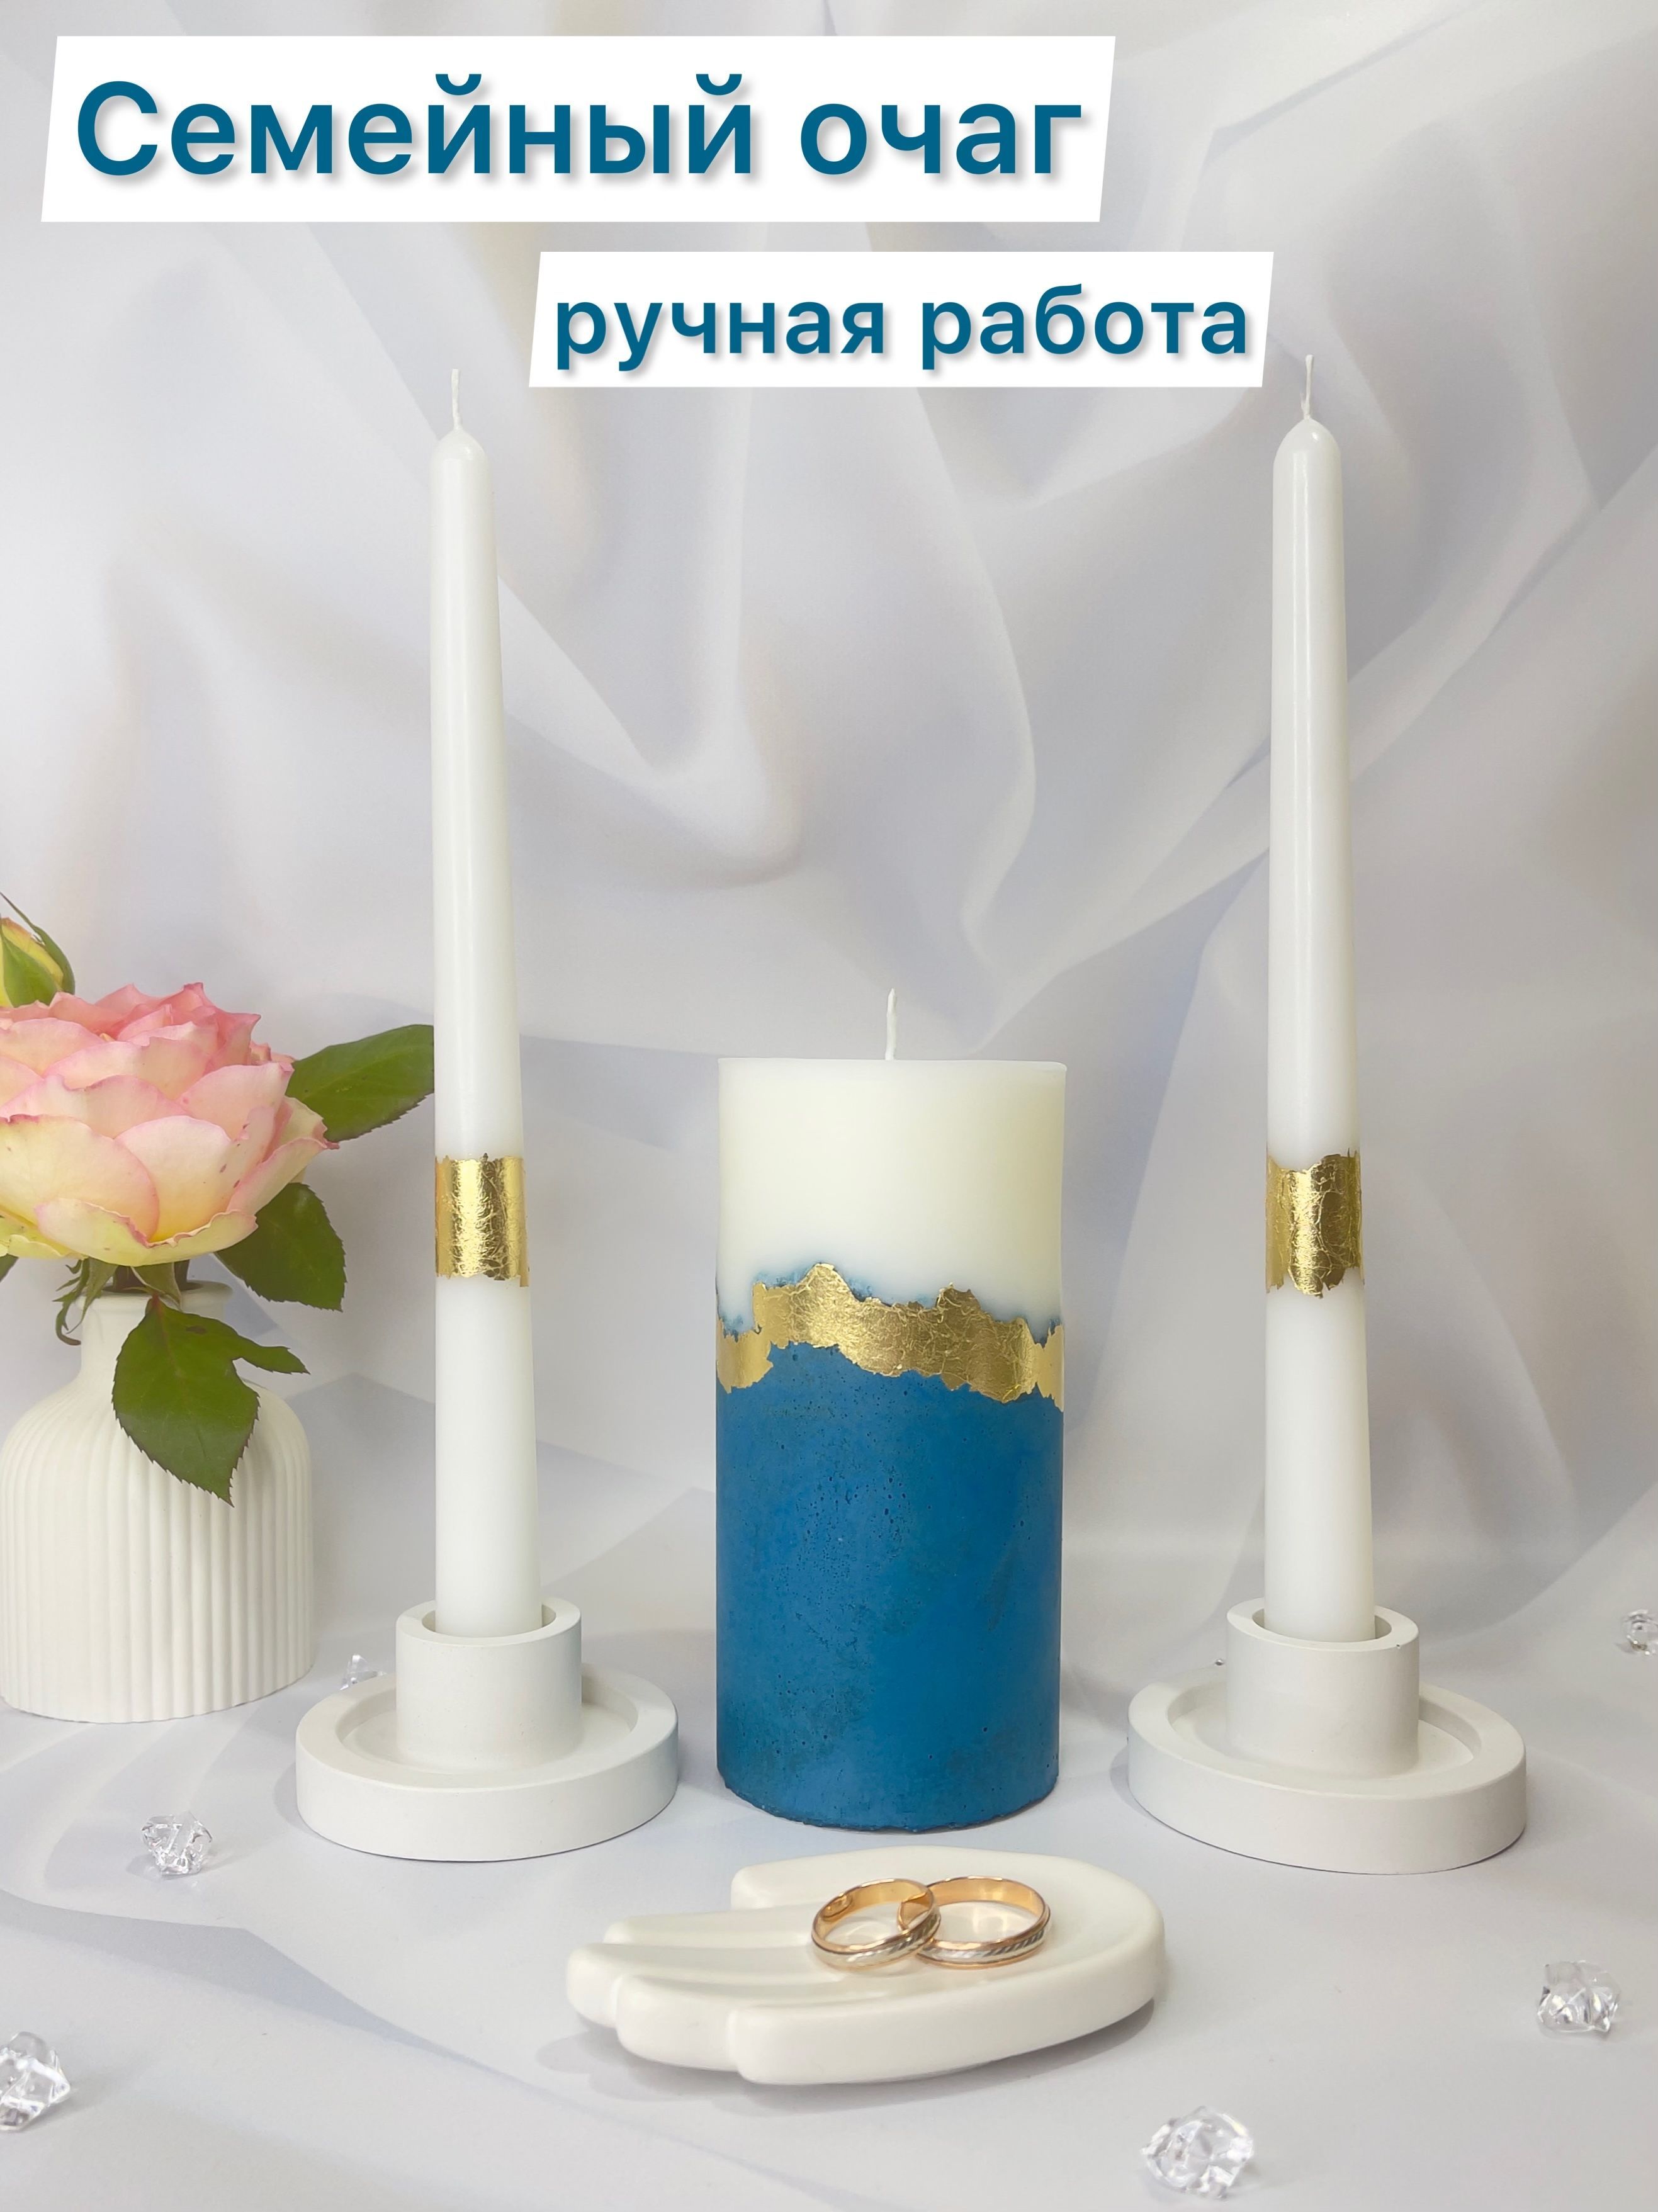 Семейный очаг на свадьбу, бокалы синего цвета | Table decorations, Decor, Glassware